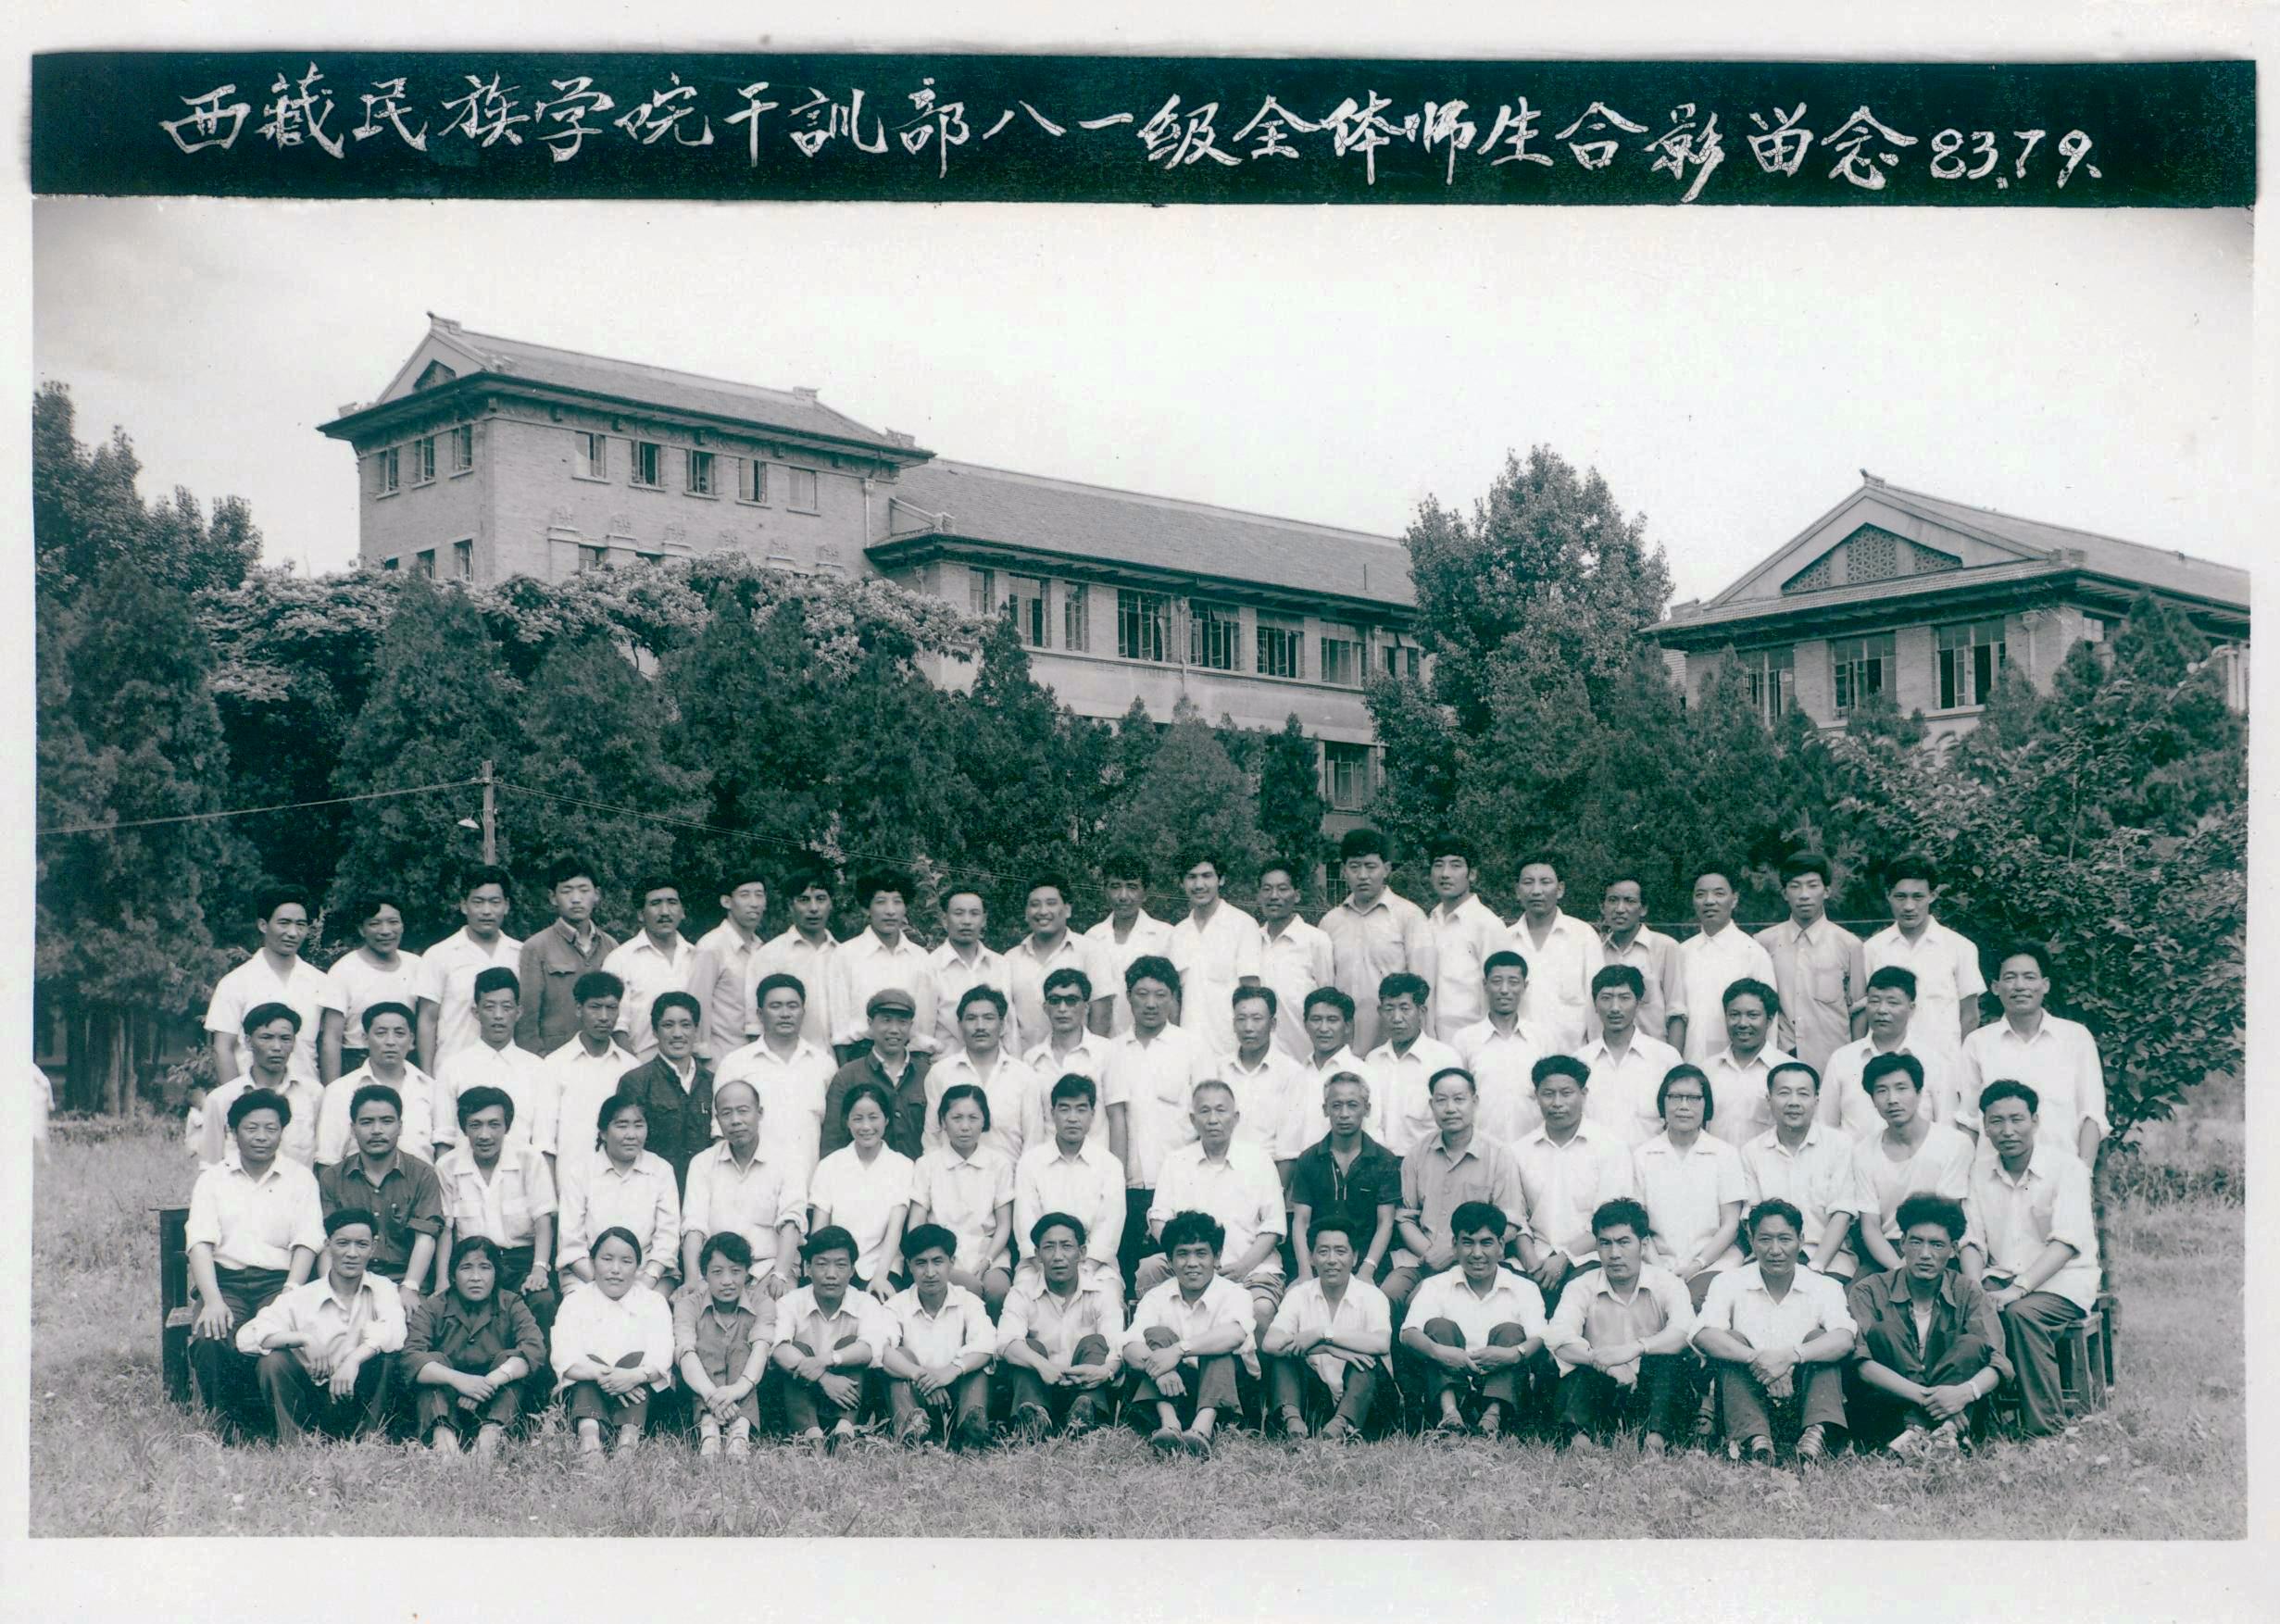 对西藏大学 2019 新入学的学弟学妹们有哪些建议？ - 知乎